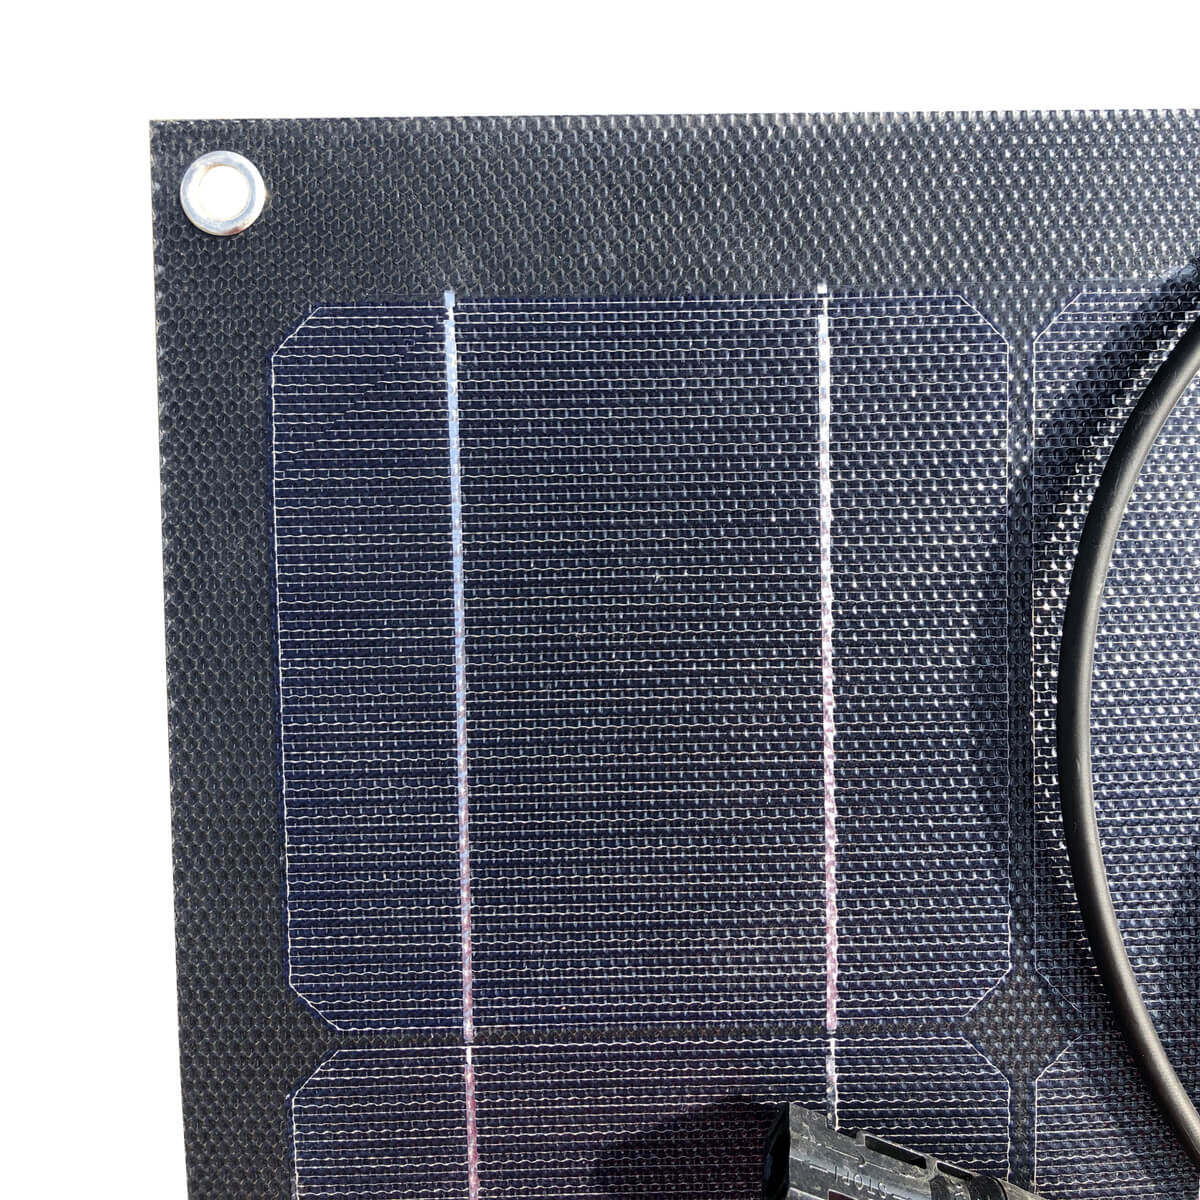 48v flexible solar panel